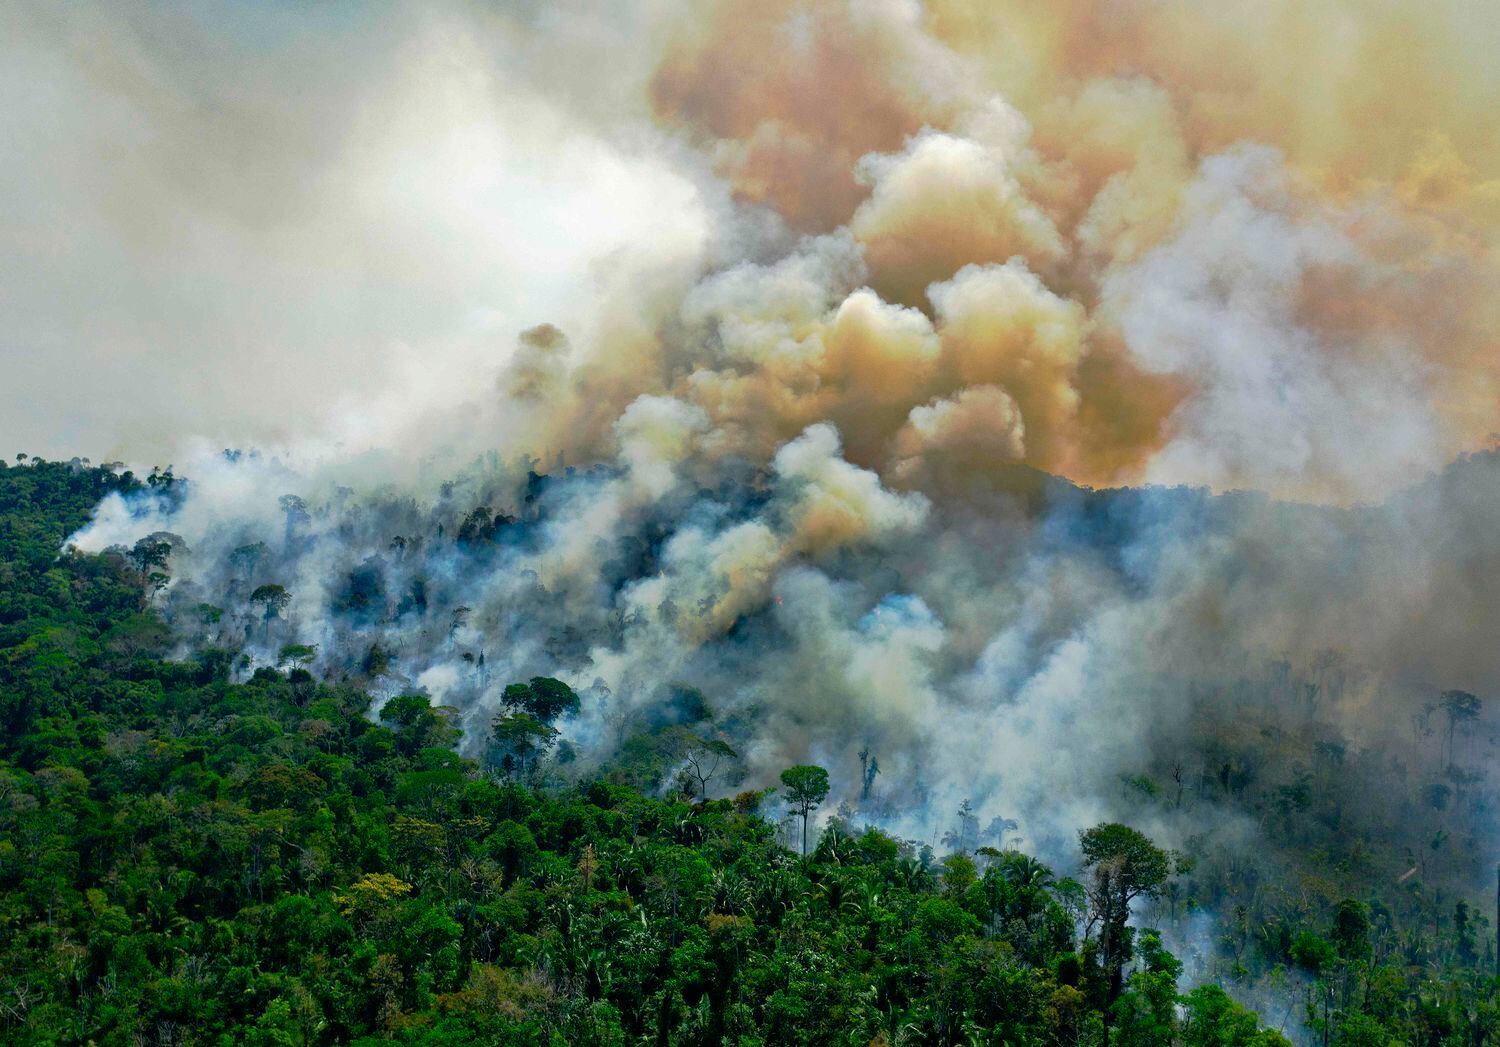 Imagem de 16 de agosto de 2020, mostra a vista aérea de uma área em chamas na reserva da floresta amazônica, ao sul de Novo Progresso no Estado do Pará.